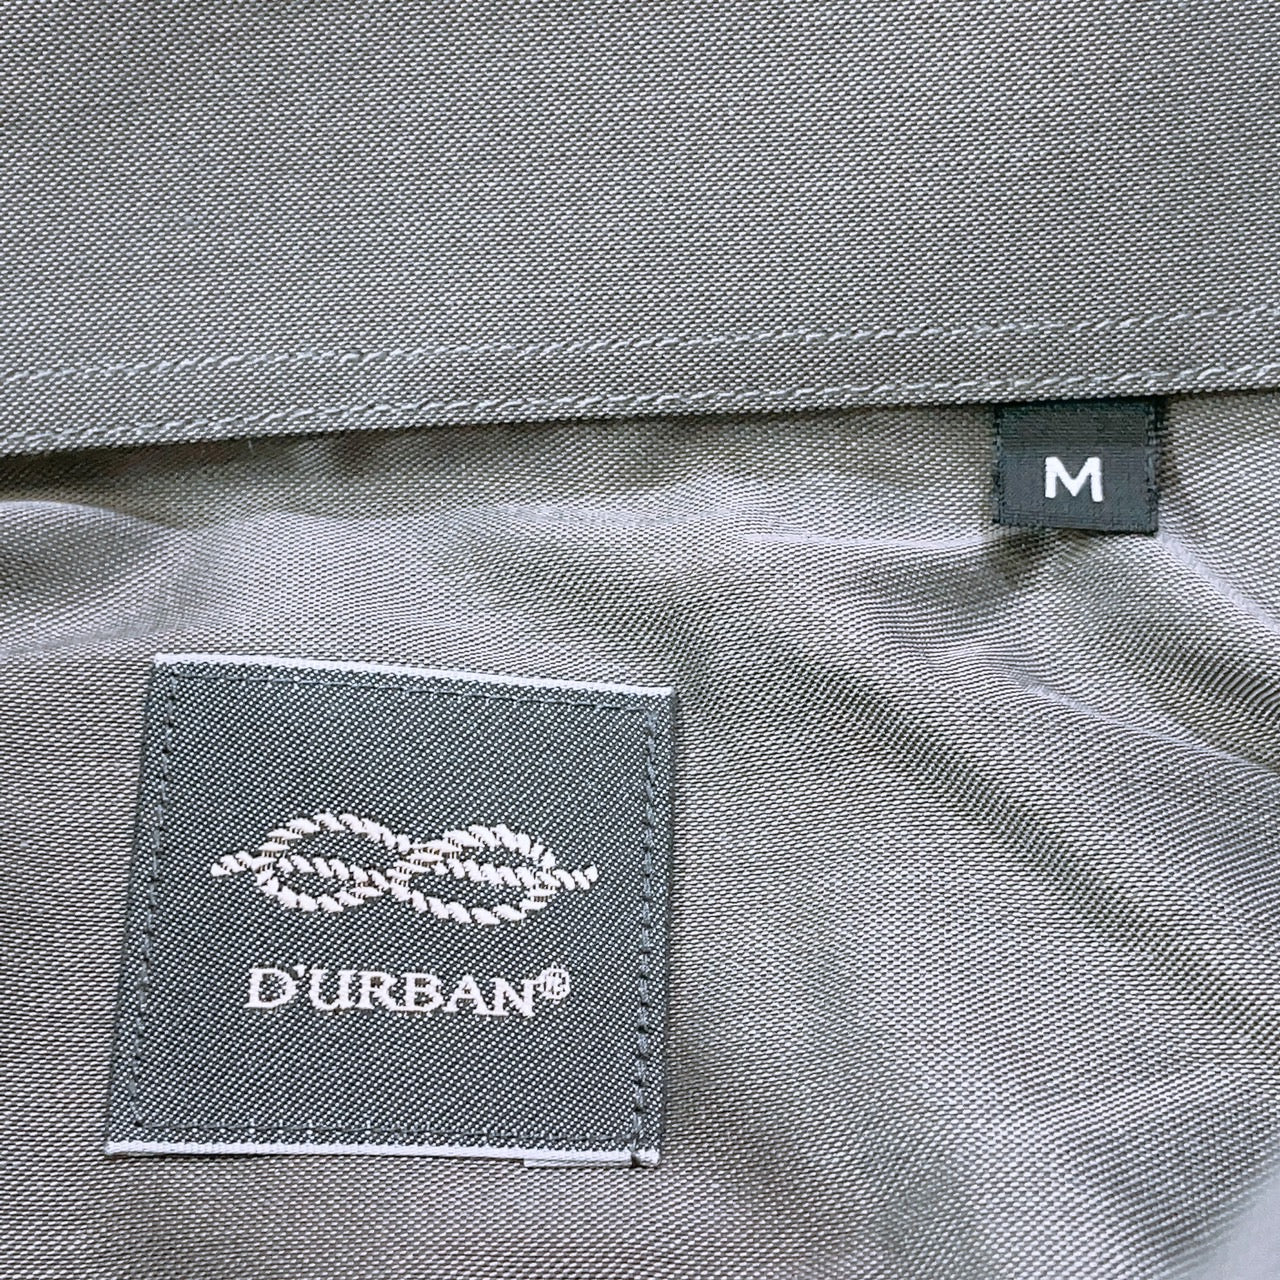 【28194】 Durban ダーバン 長袖シャツ サイズM カーキ ワイシャツ カッターシャツ ボタンダウン 胸ポケット 無地 シンプル メンズ